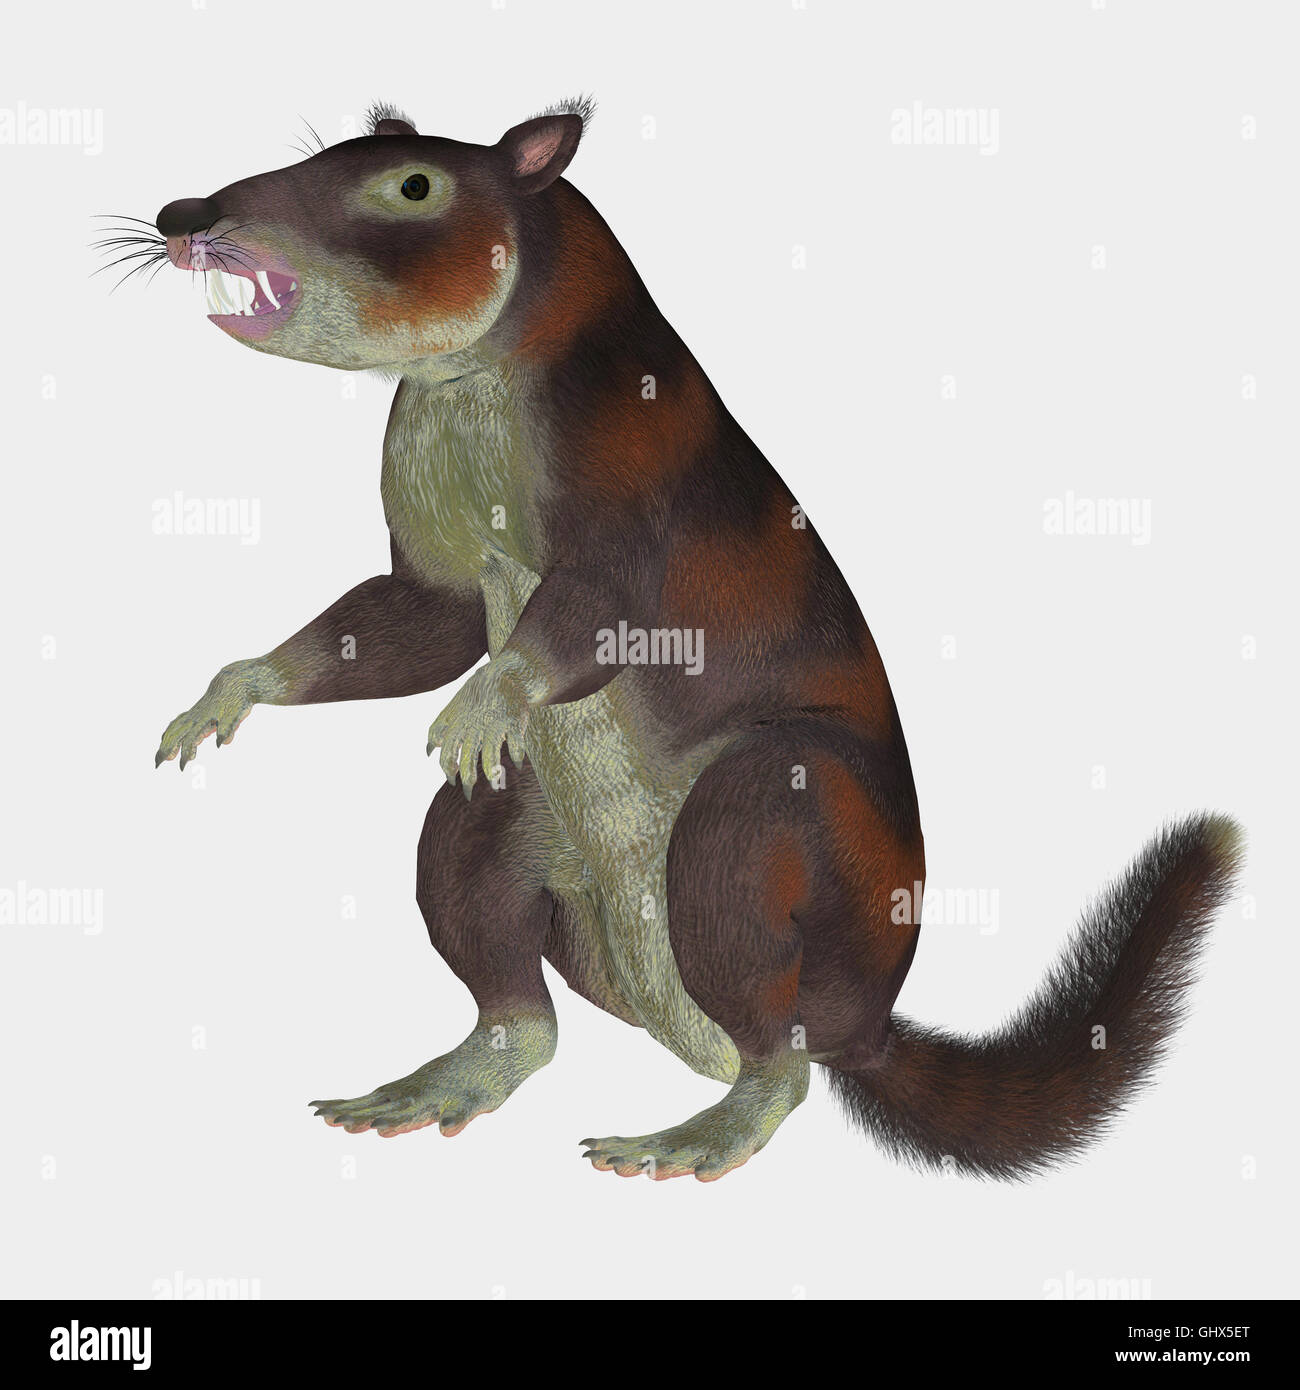 Cronopio war ein Eichhörnchen-Größe Säugetier, das mit den Dinosauriern in der Kreidezeit Periode von Argentinien, Südamerika lebte. Stockfoto